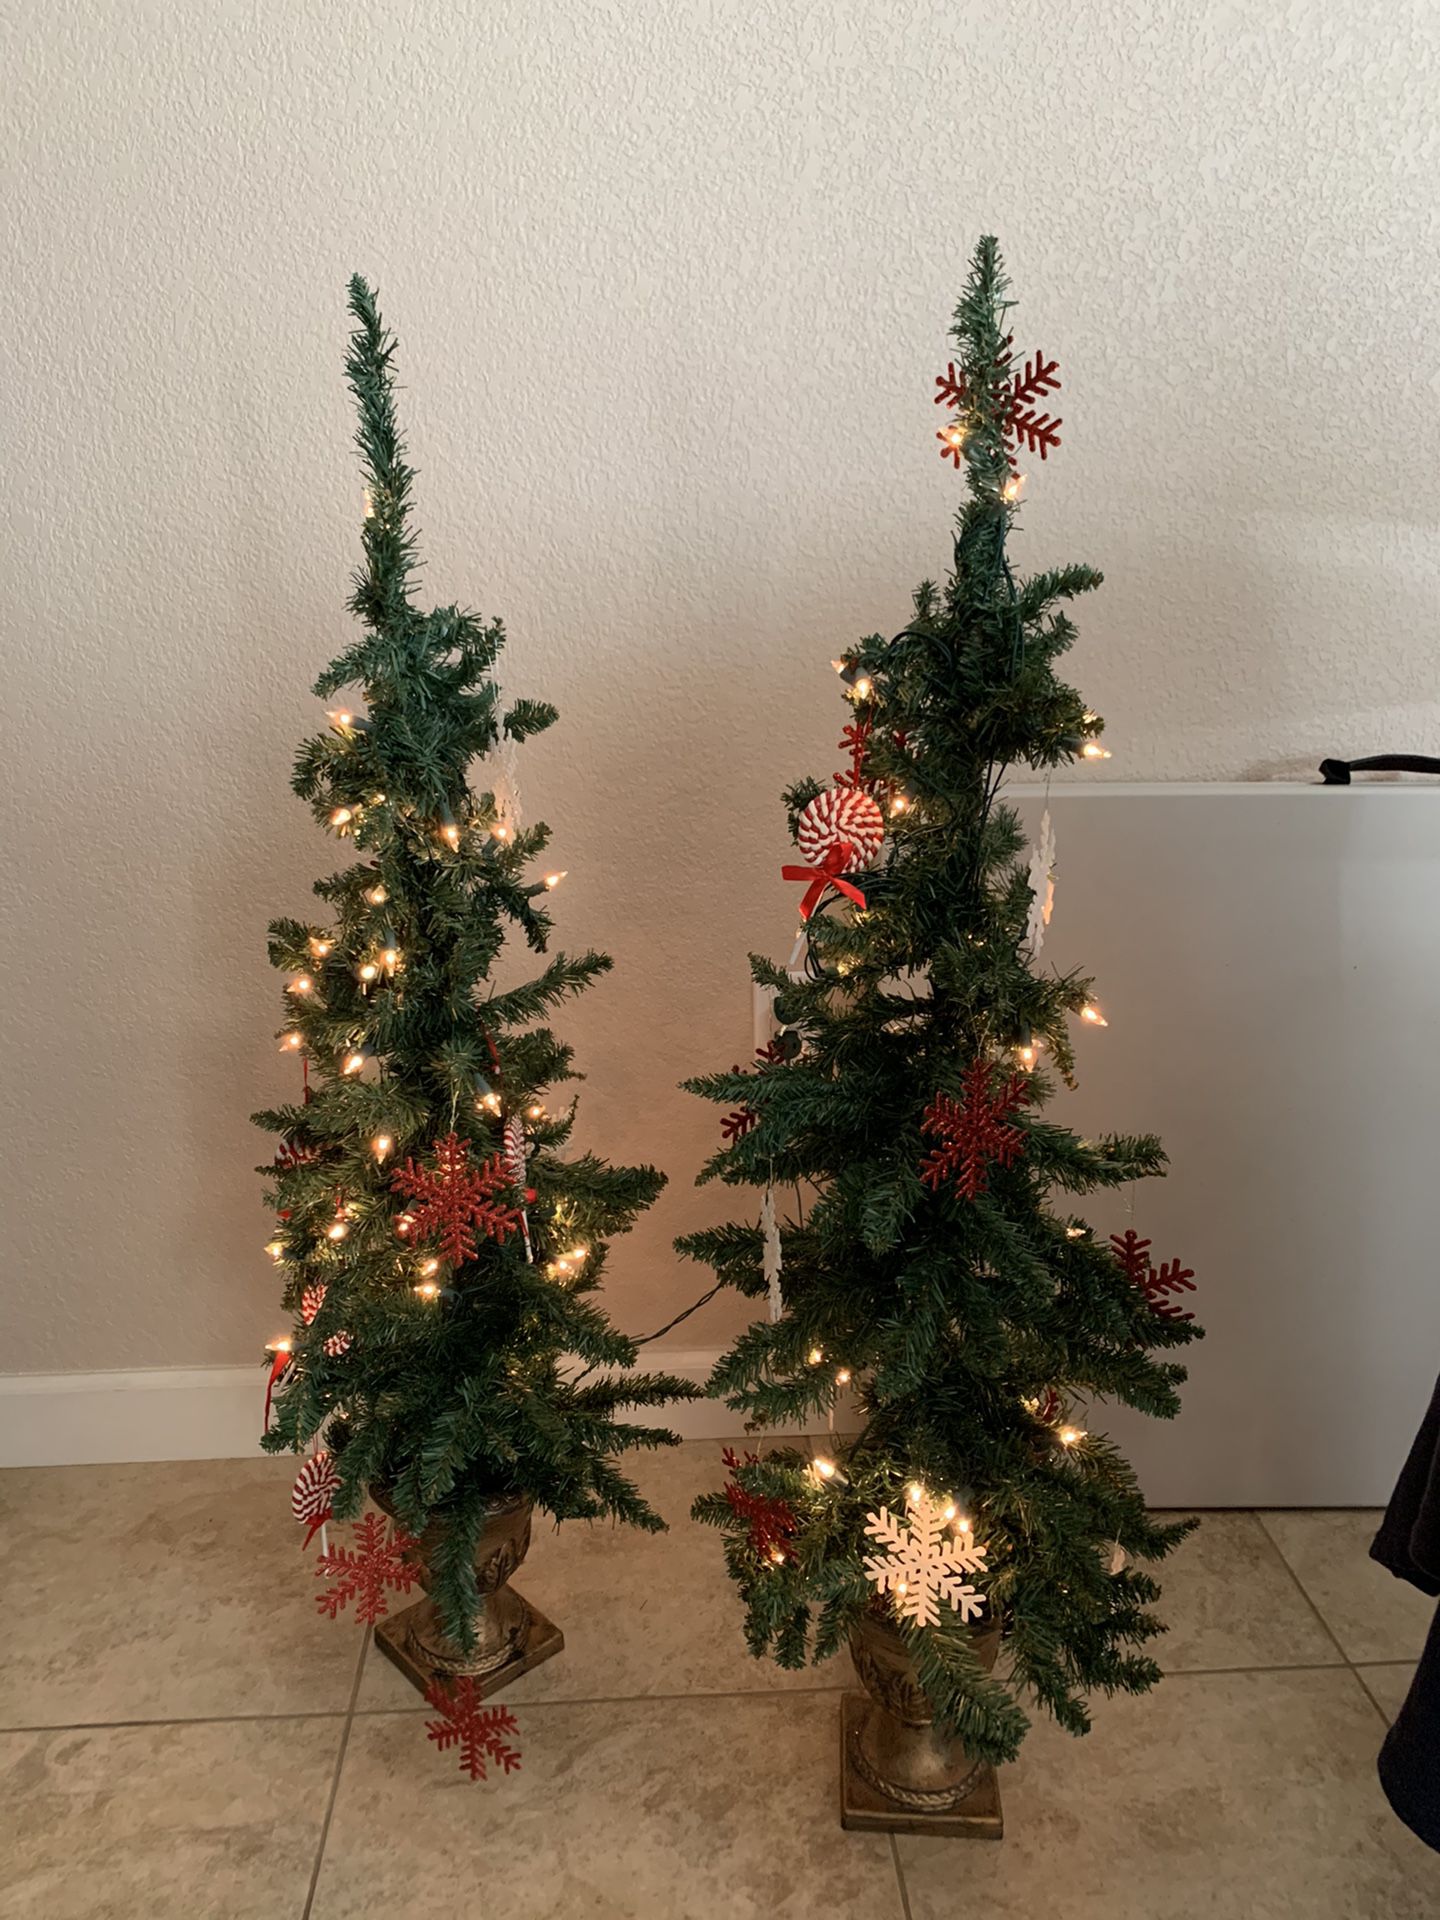 Small Christmas trees